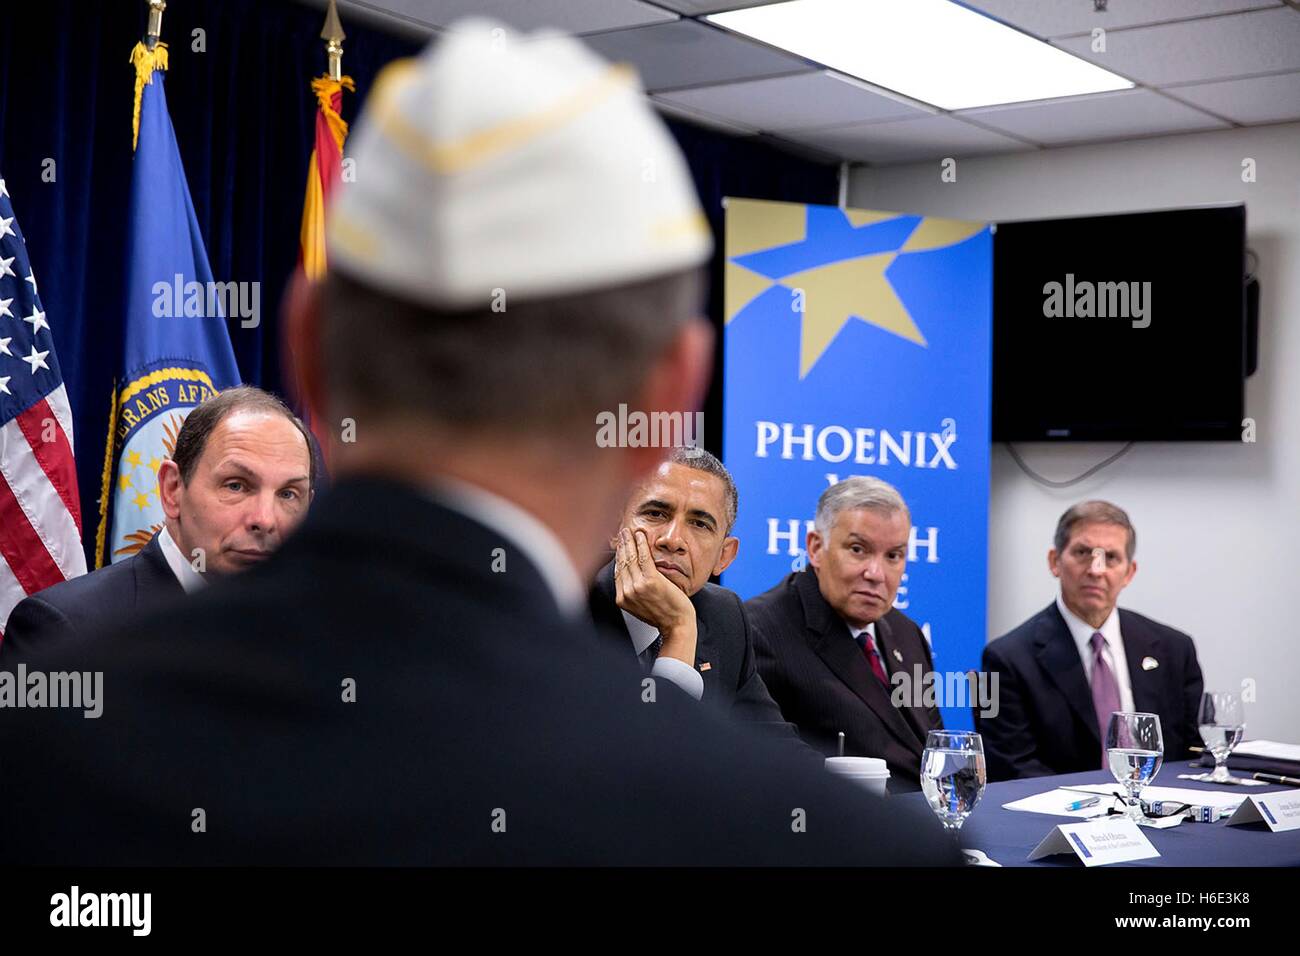 Stati Uniti Il presidente Barack Obama e gli Affari dei Veterani Segretario Robert McDonald incontrare con i veterani e VA dipendenti durante una sessione di briefing presso il Phoenix VA Medical Center Marzo 13, 2015 a Phoenix, in Arizona. Foto Stock